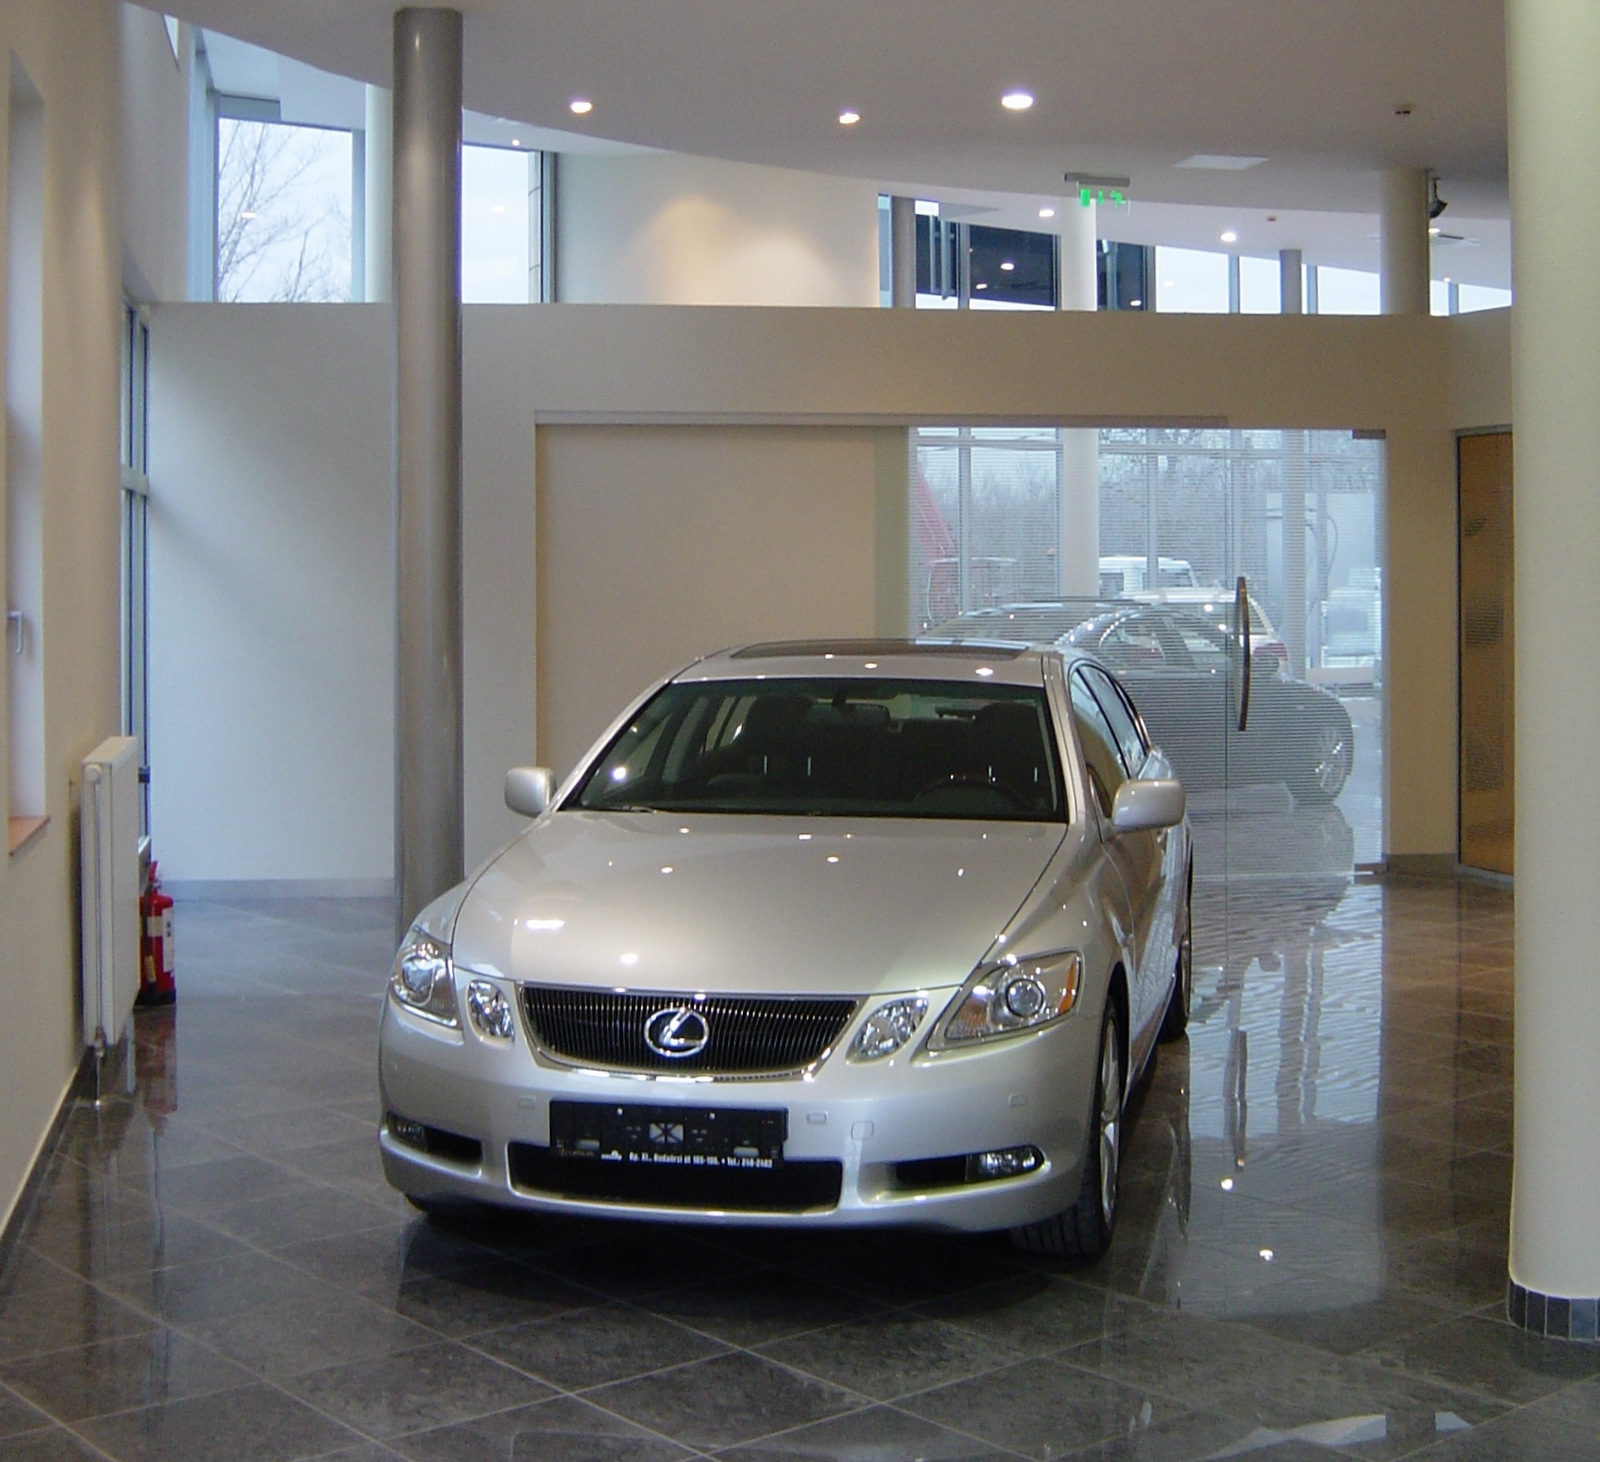 Lexus szalon belsőépítészet / Lexus salon interior design